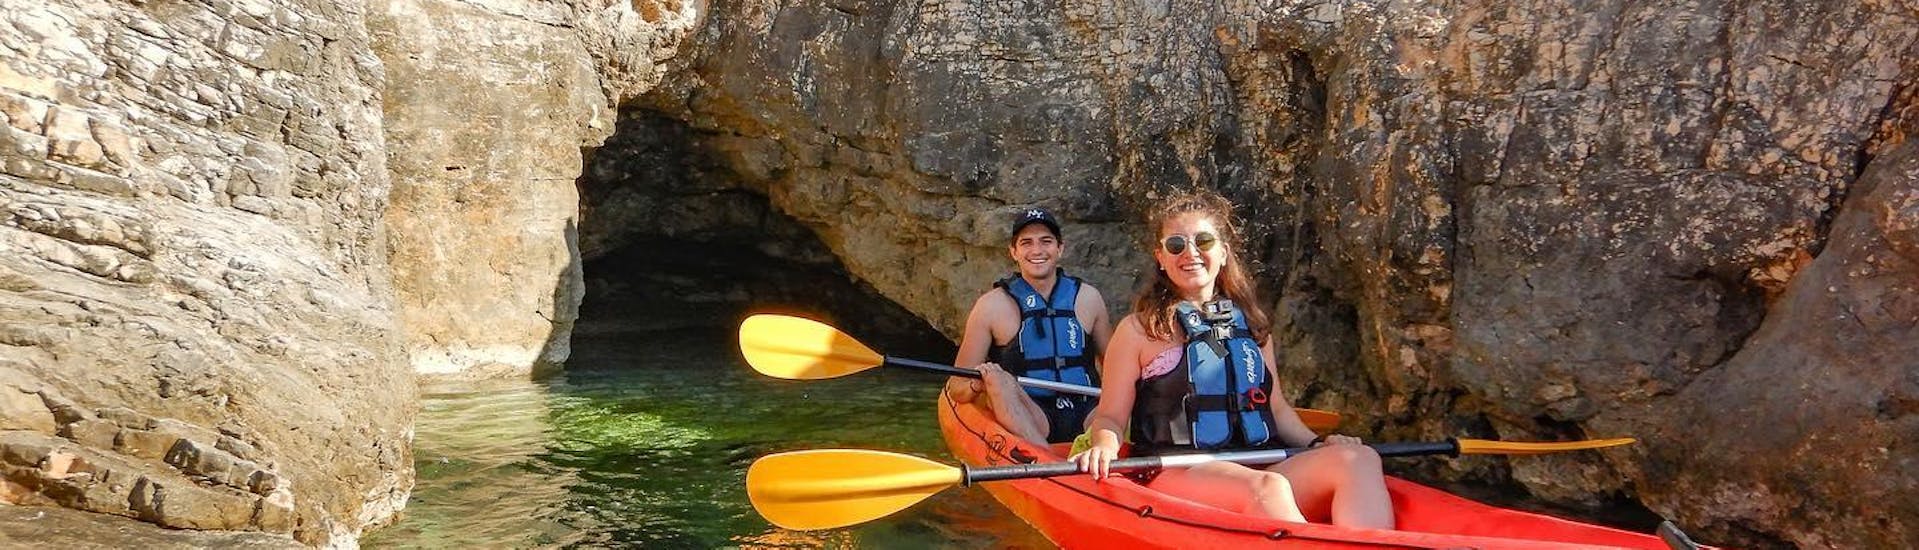 Acantilados y kayak de mar en la cueva azul en Pula.